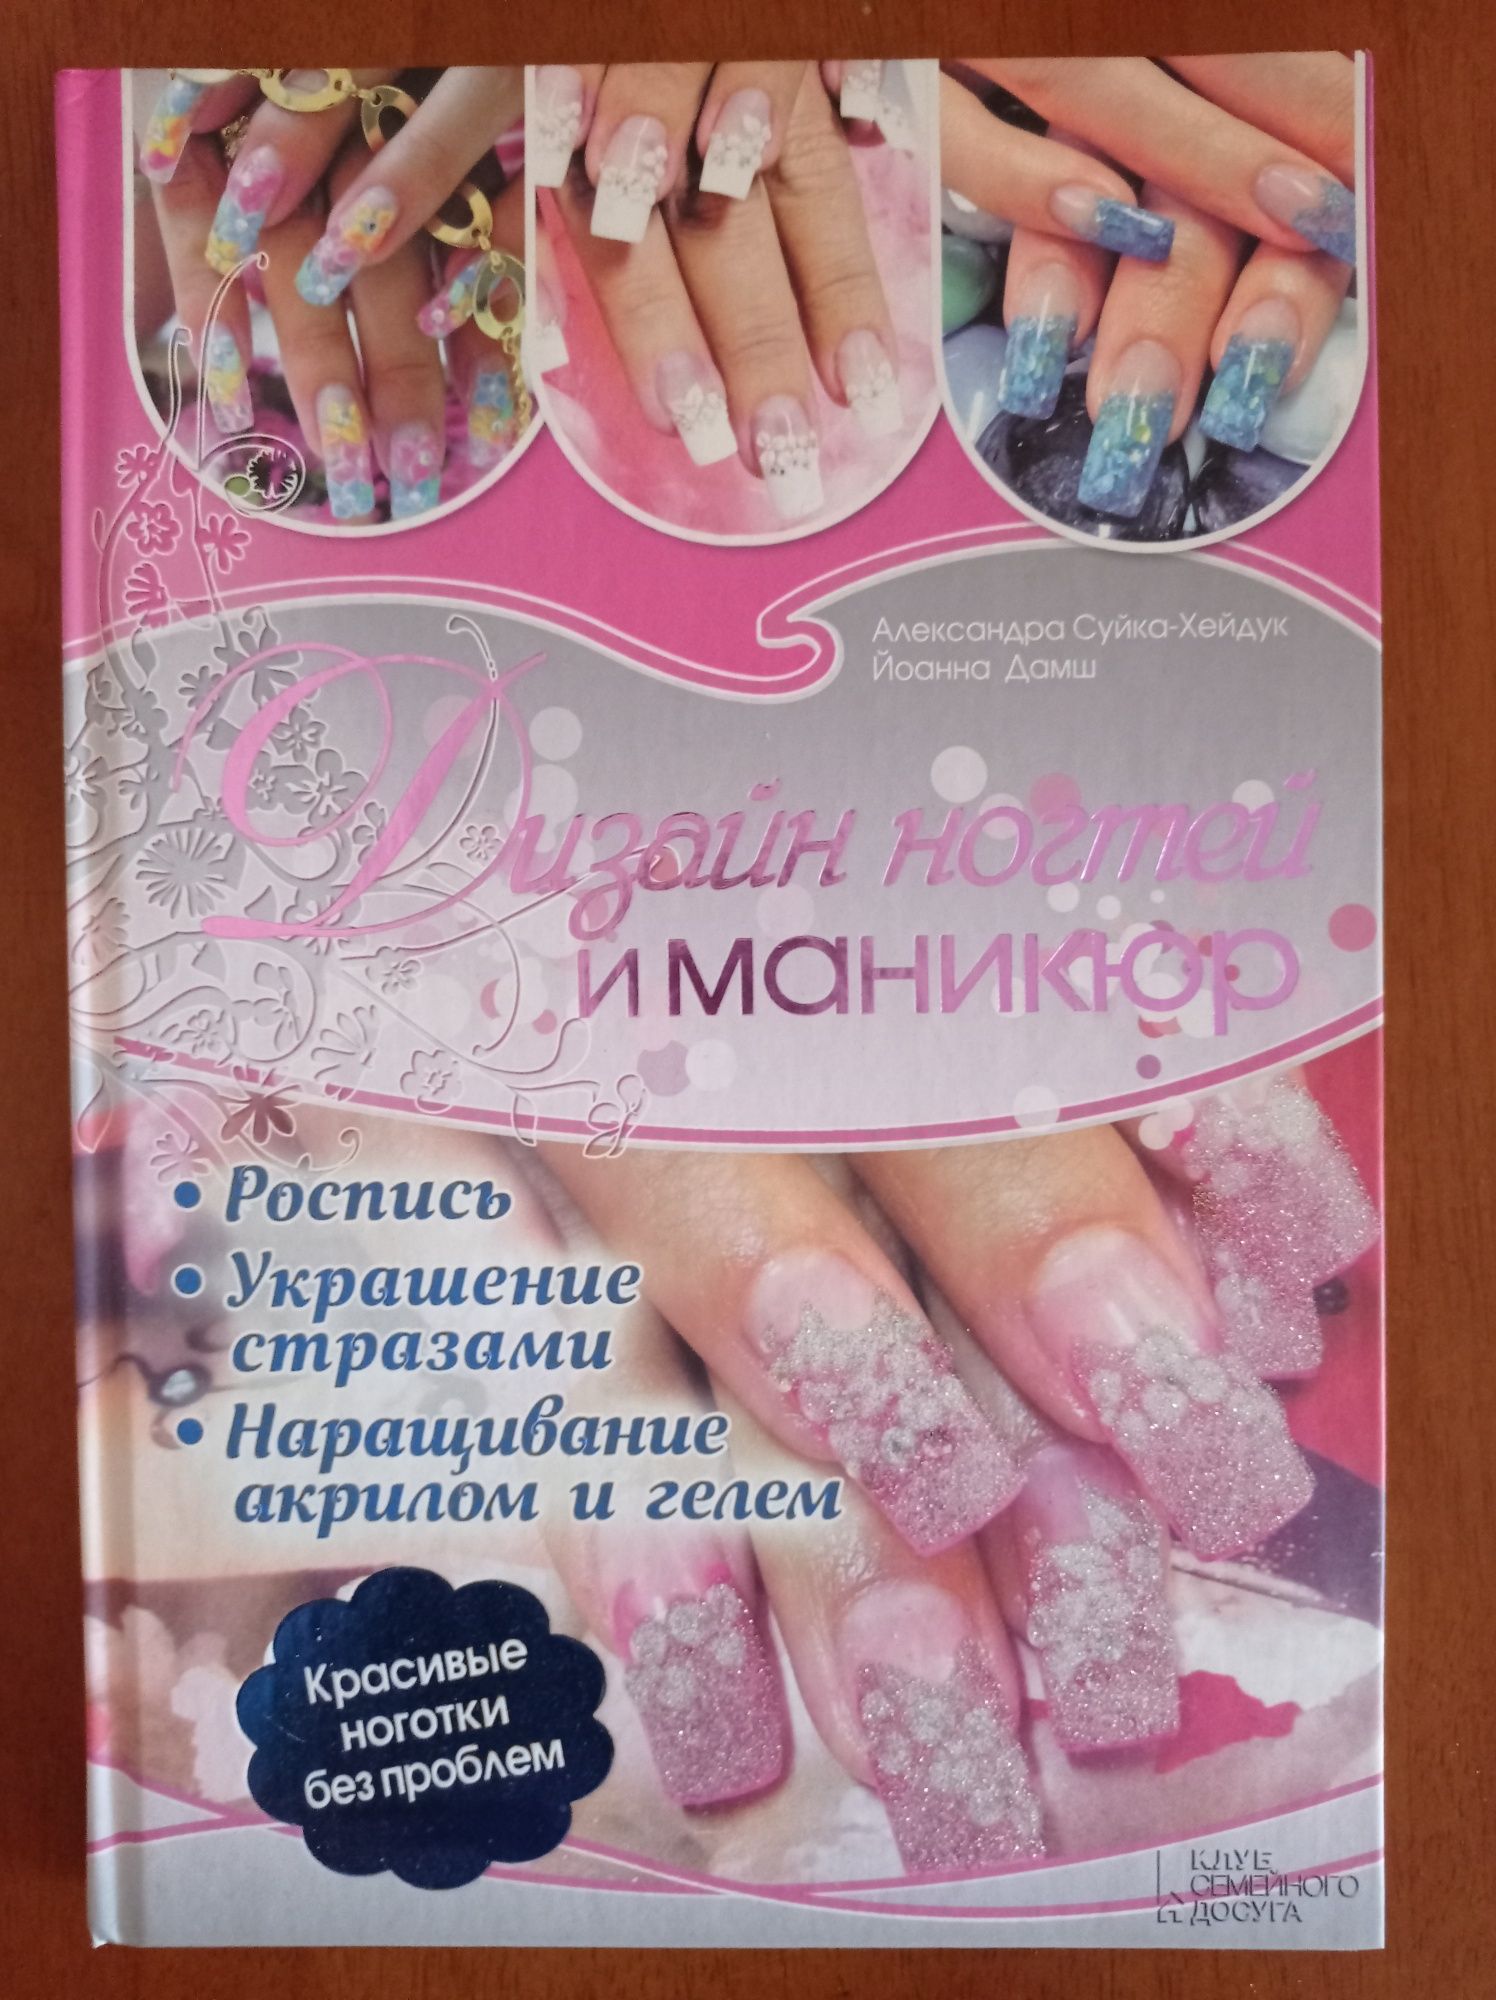 Аквариум Советы и рекомендации. Дизайн ногтей